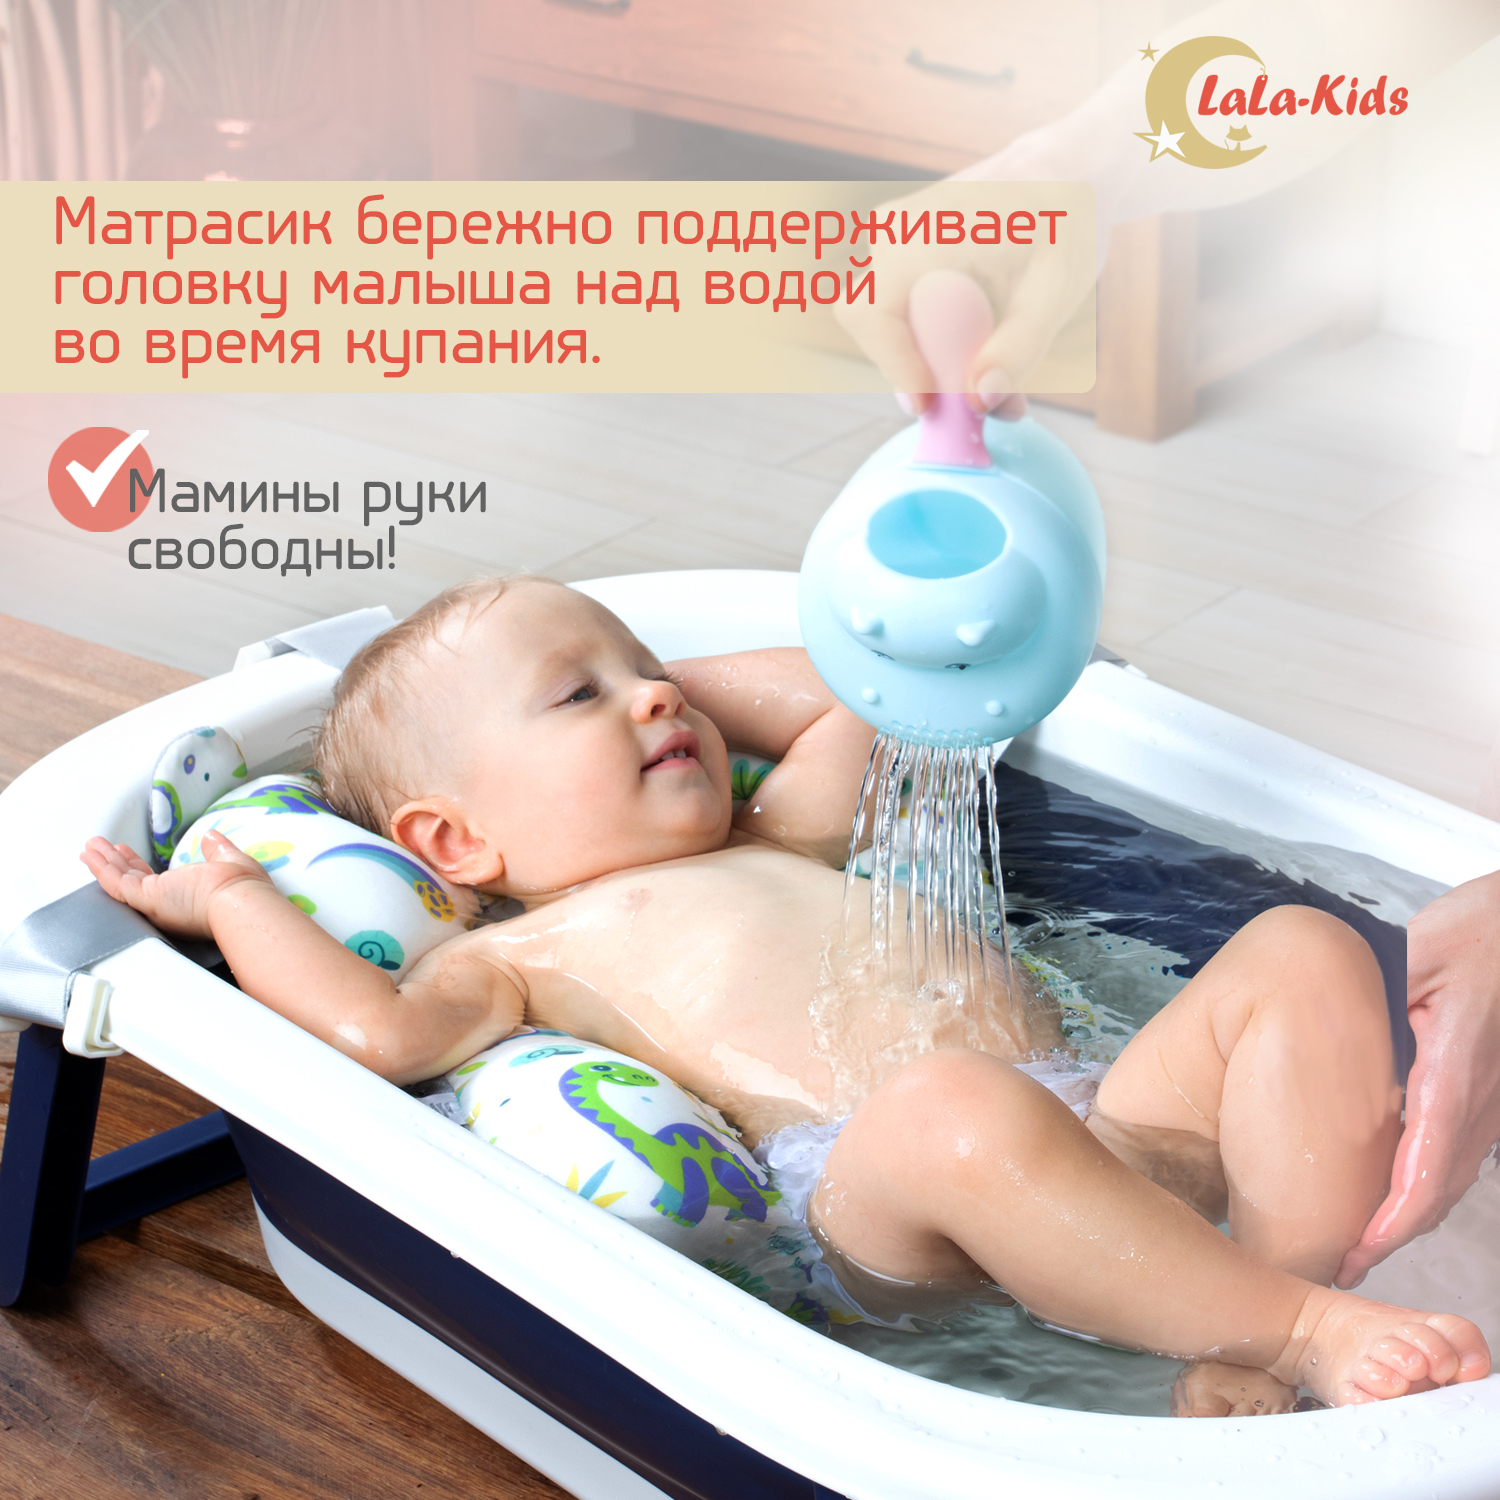 Детская ванночка LaLa-Kids складная с матрасиком для купания новорожденных - фото 11